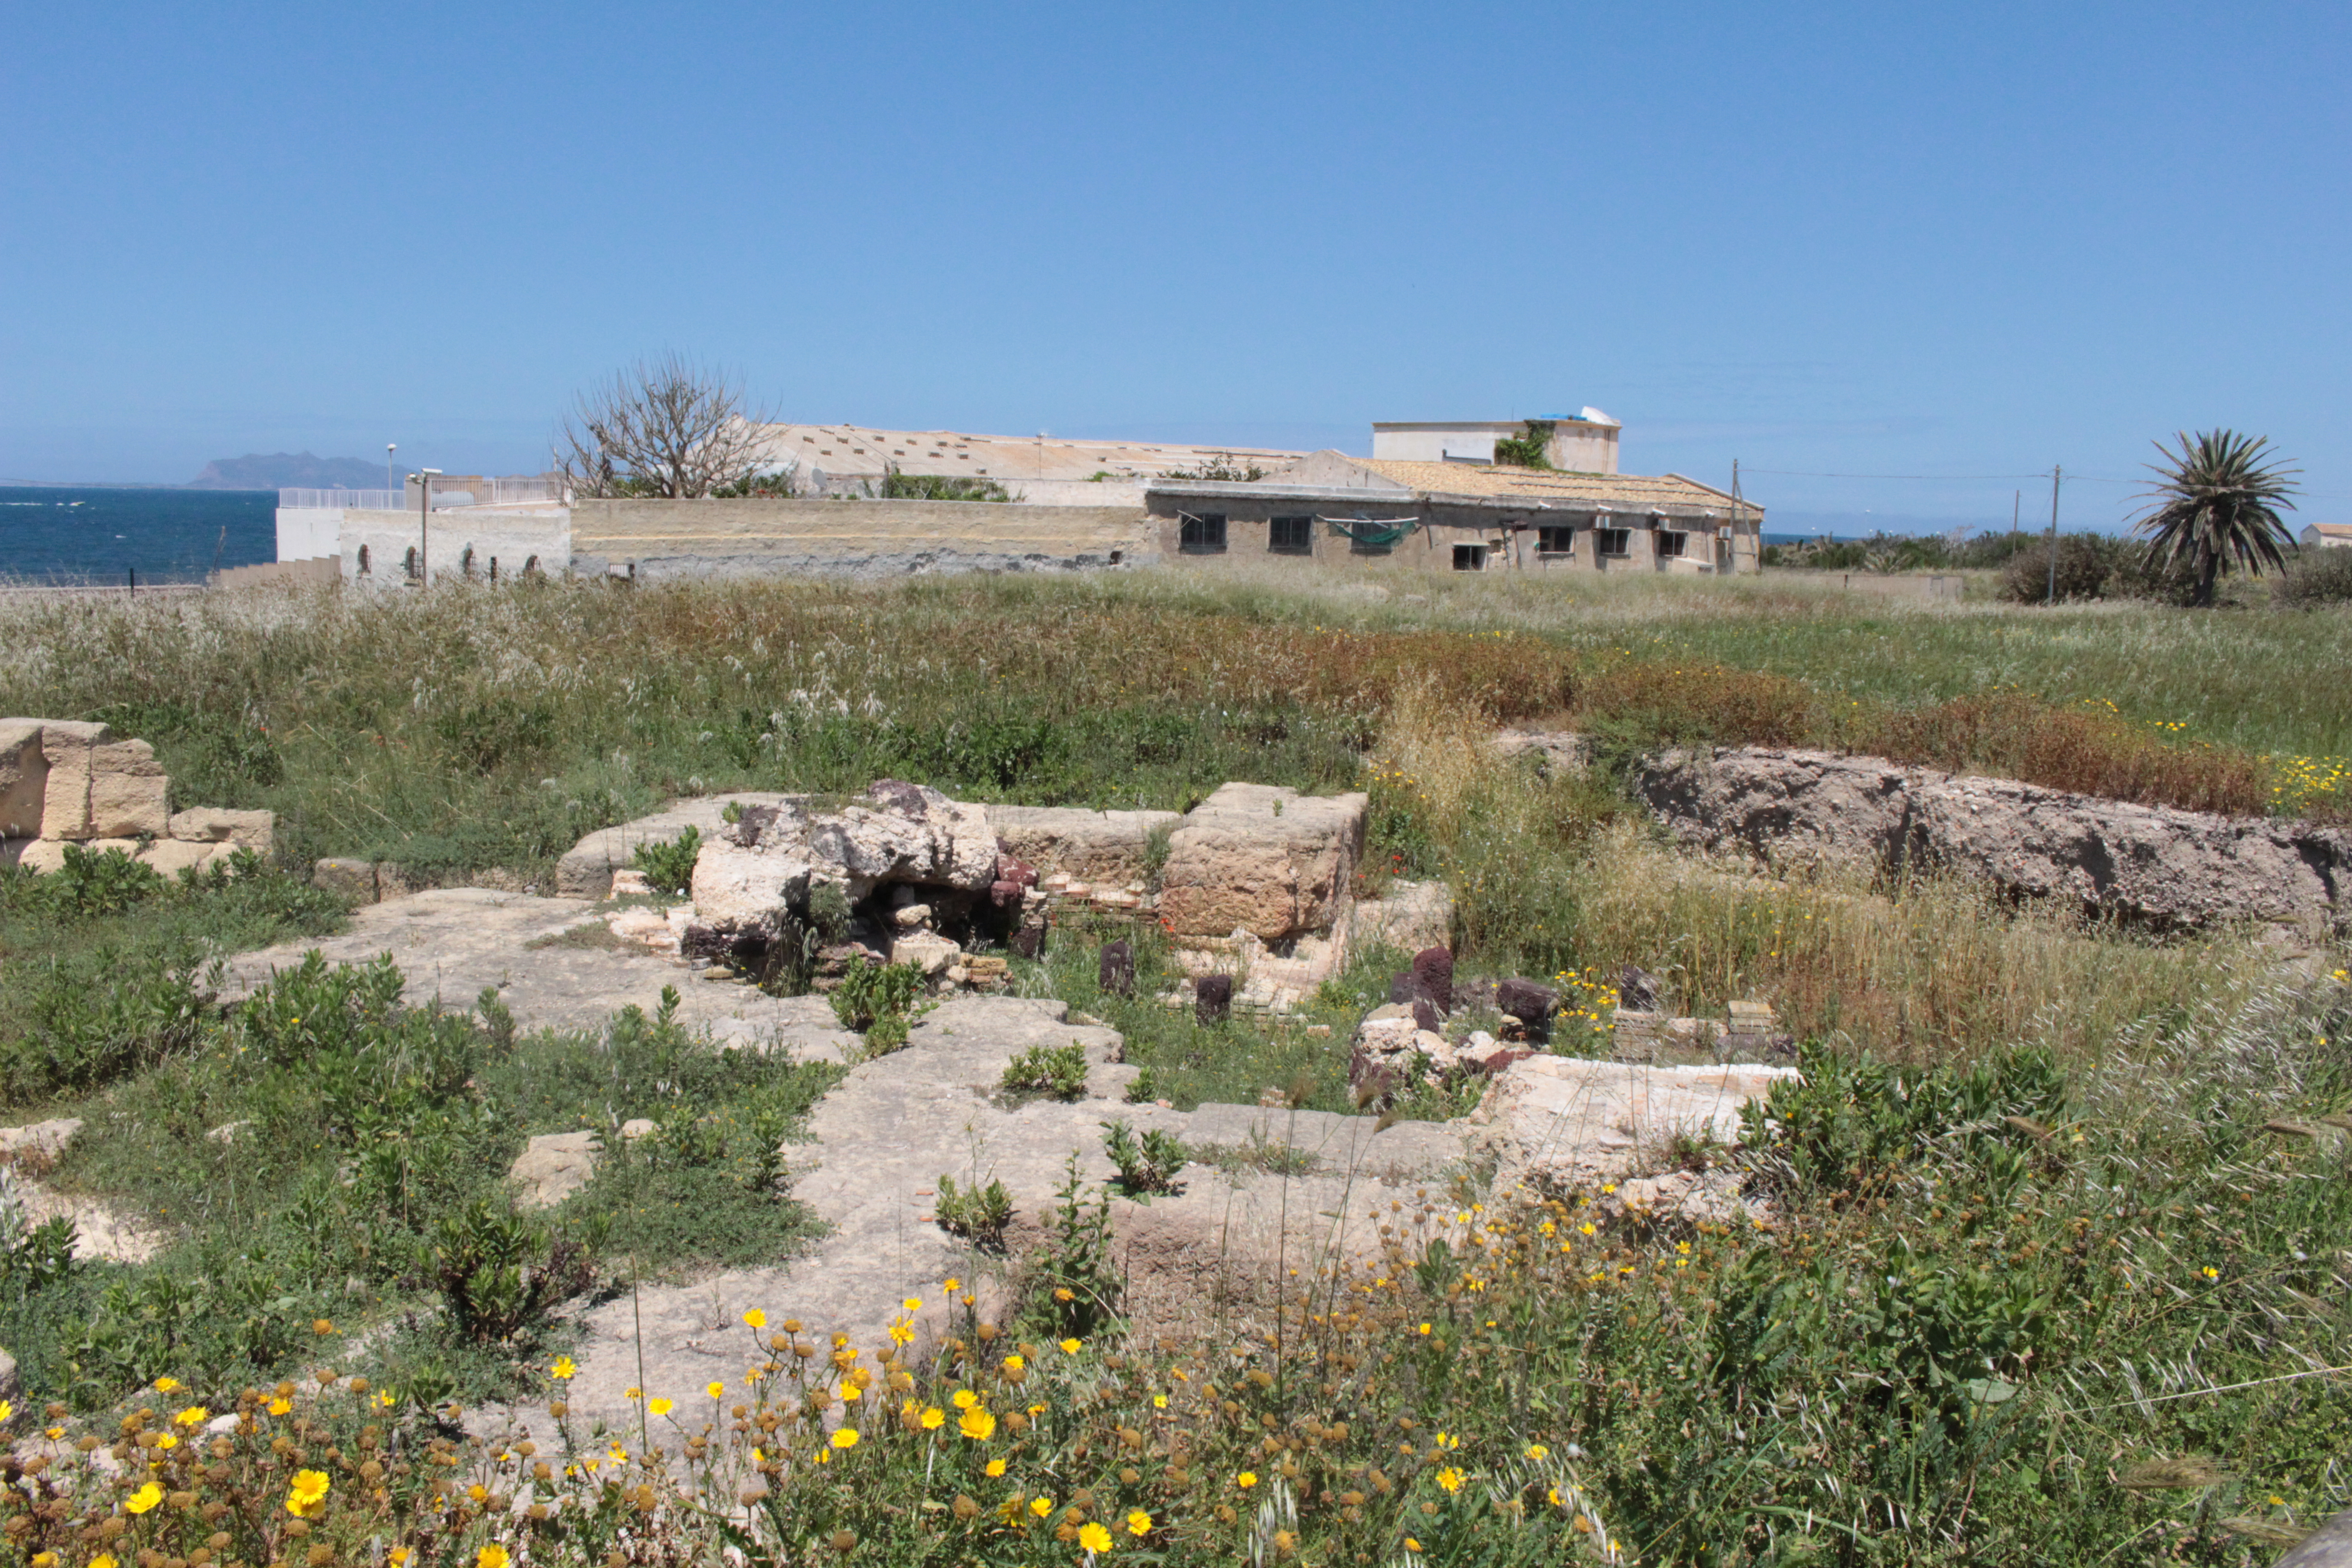 Parco archeologico, il sindaco propone una convenzione con la regione